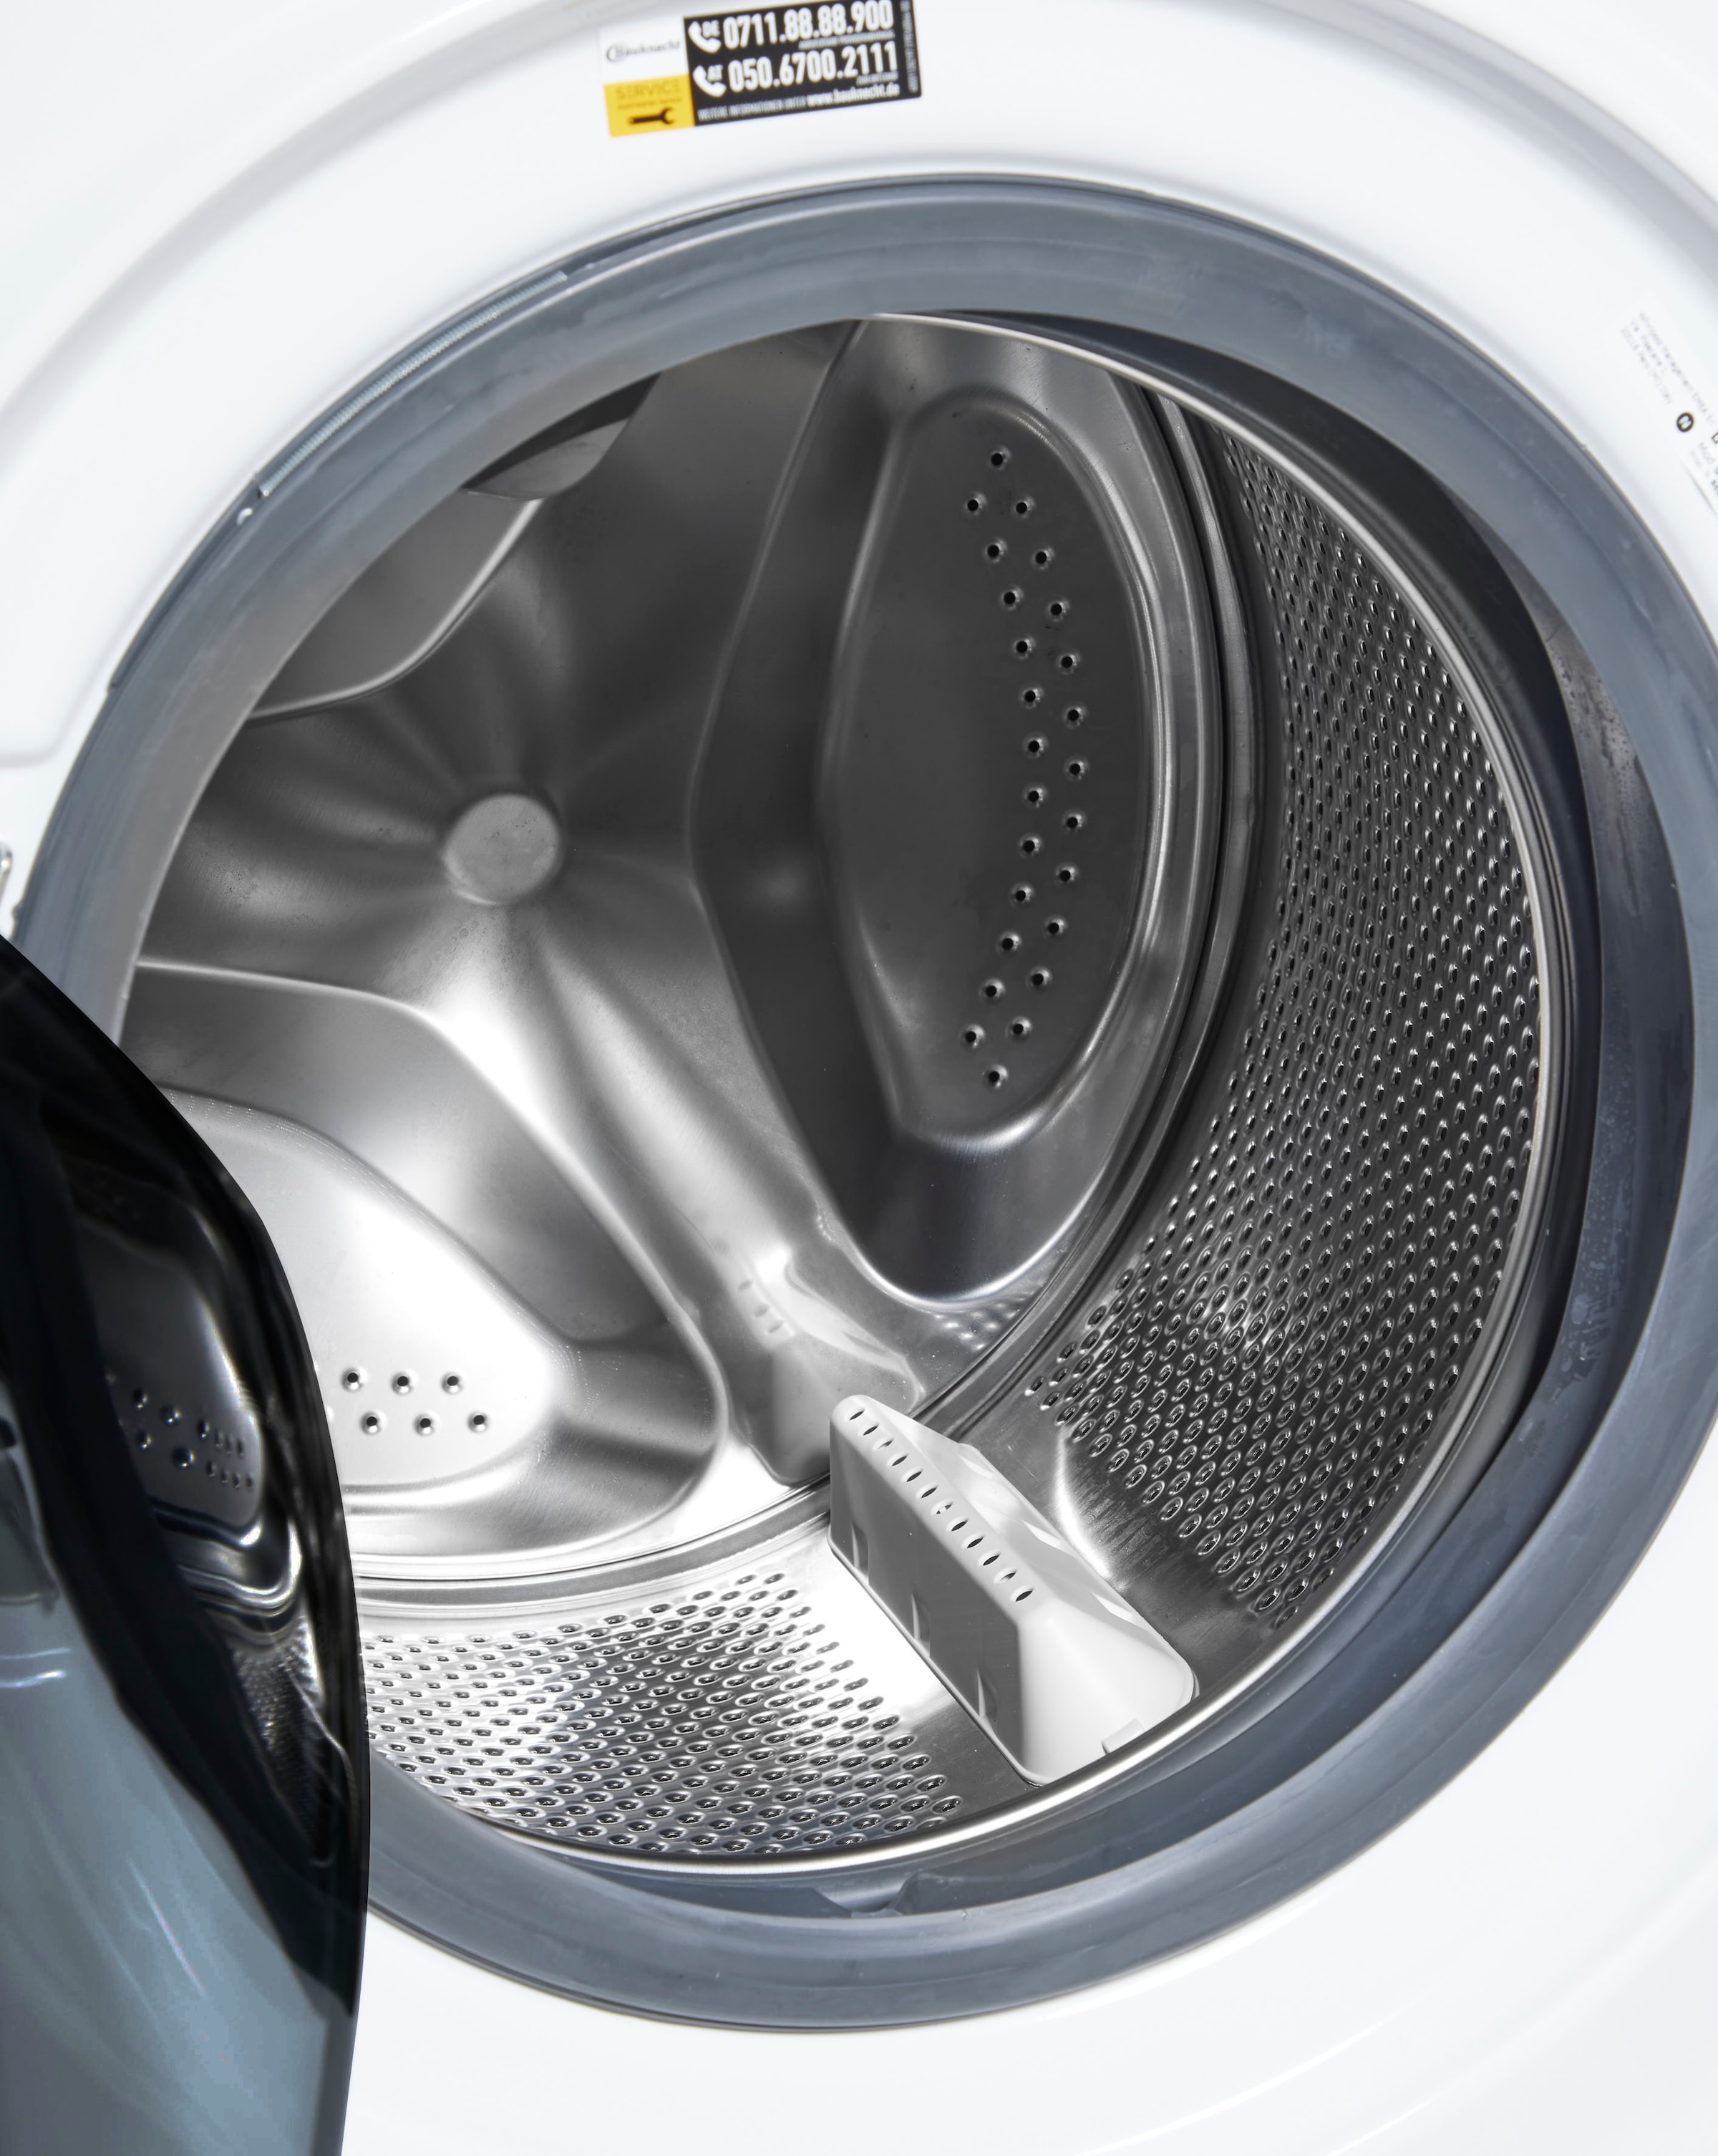 BAUKNECHT Waschmaschine Eco U/ 9464 bestellen A, 9464 4 min, kg, A«, Super bei jetzt Jahre 1400 OTTO Eco »Super Herstellergarantie 9